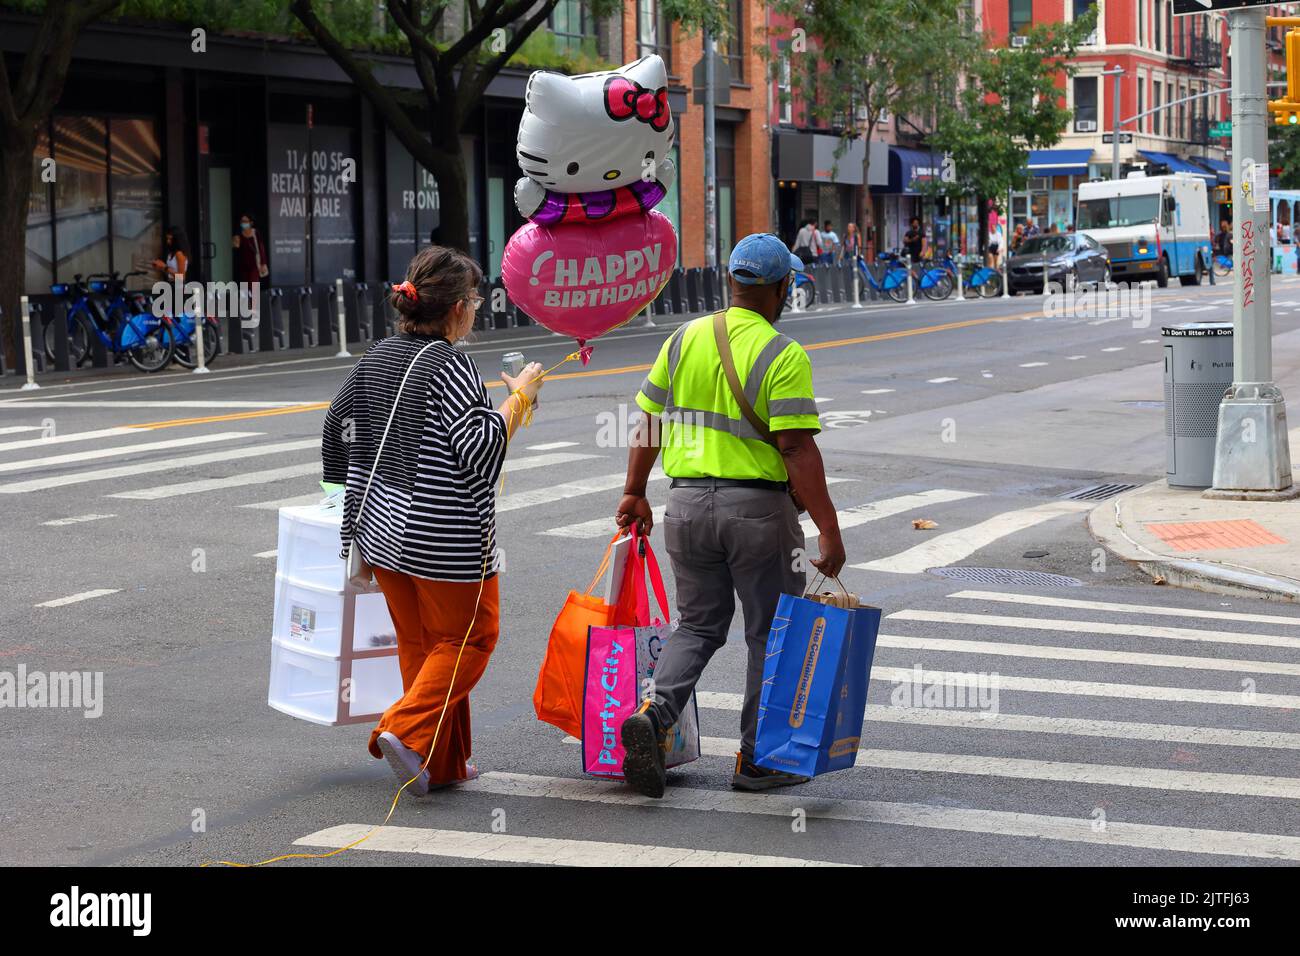 Les gens qui marchent dans une rue avec un ballon d'anniversaire Hello Kitty heureux et des fournitures de fête dans le quartier de East Village à Manhattan, New York City Banque D'Images